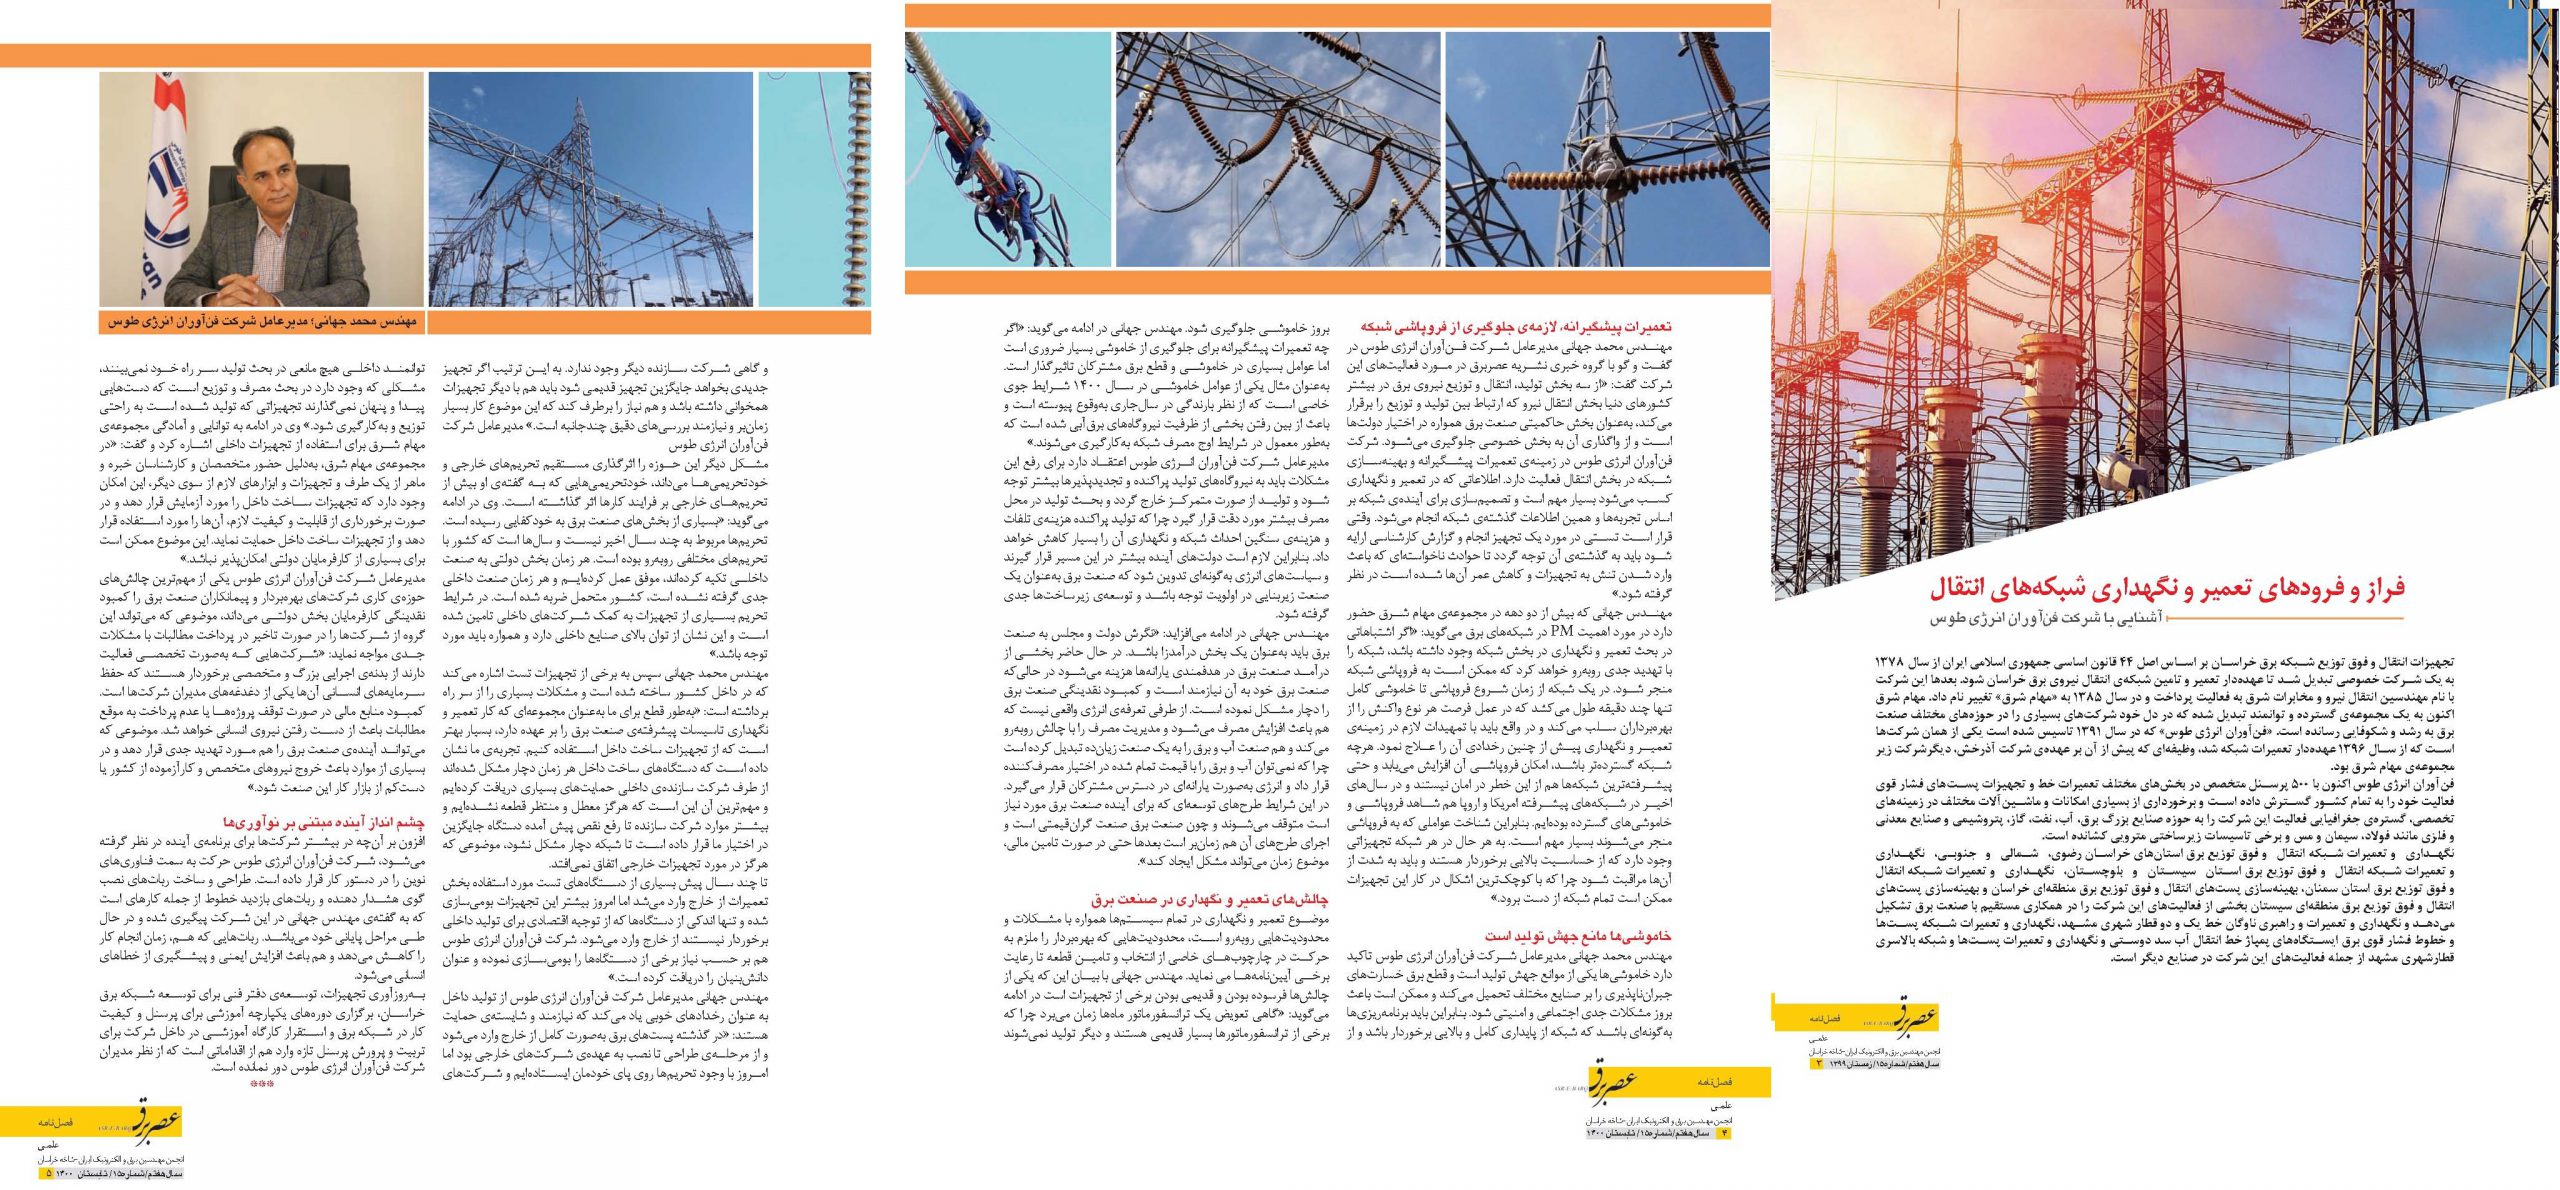 مصاحبه اختصاصی مجله عصر برق با مدیر عامل شرکت فن آوران انرژی طوس